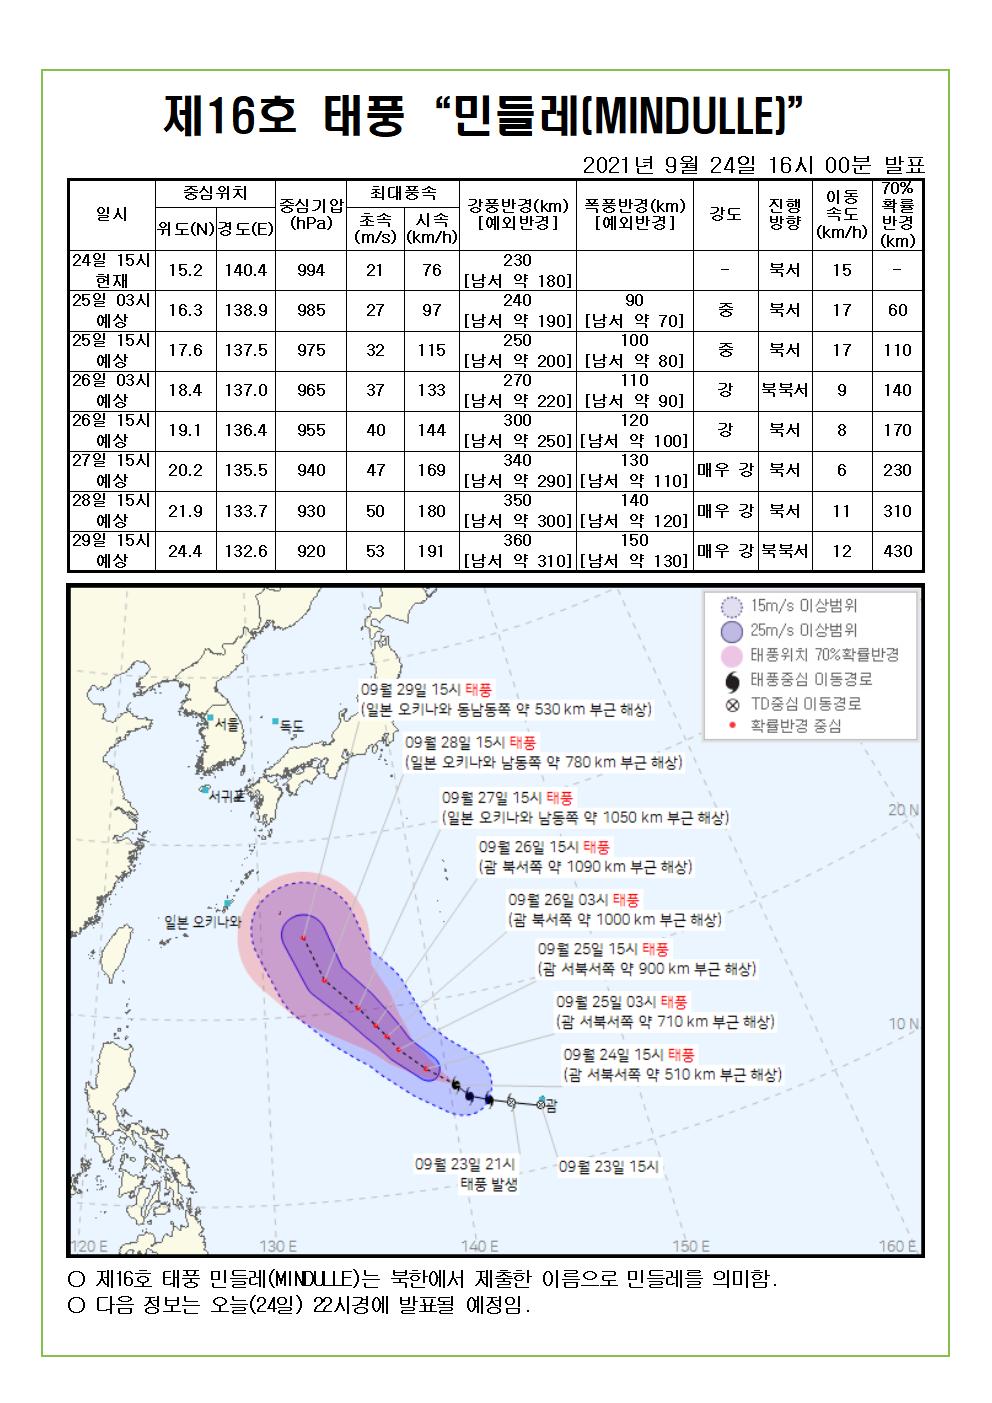 제16호 태풍 민들레 예상진로도 9월 24일(금) 16시00분